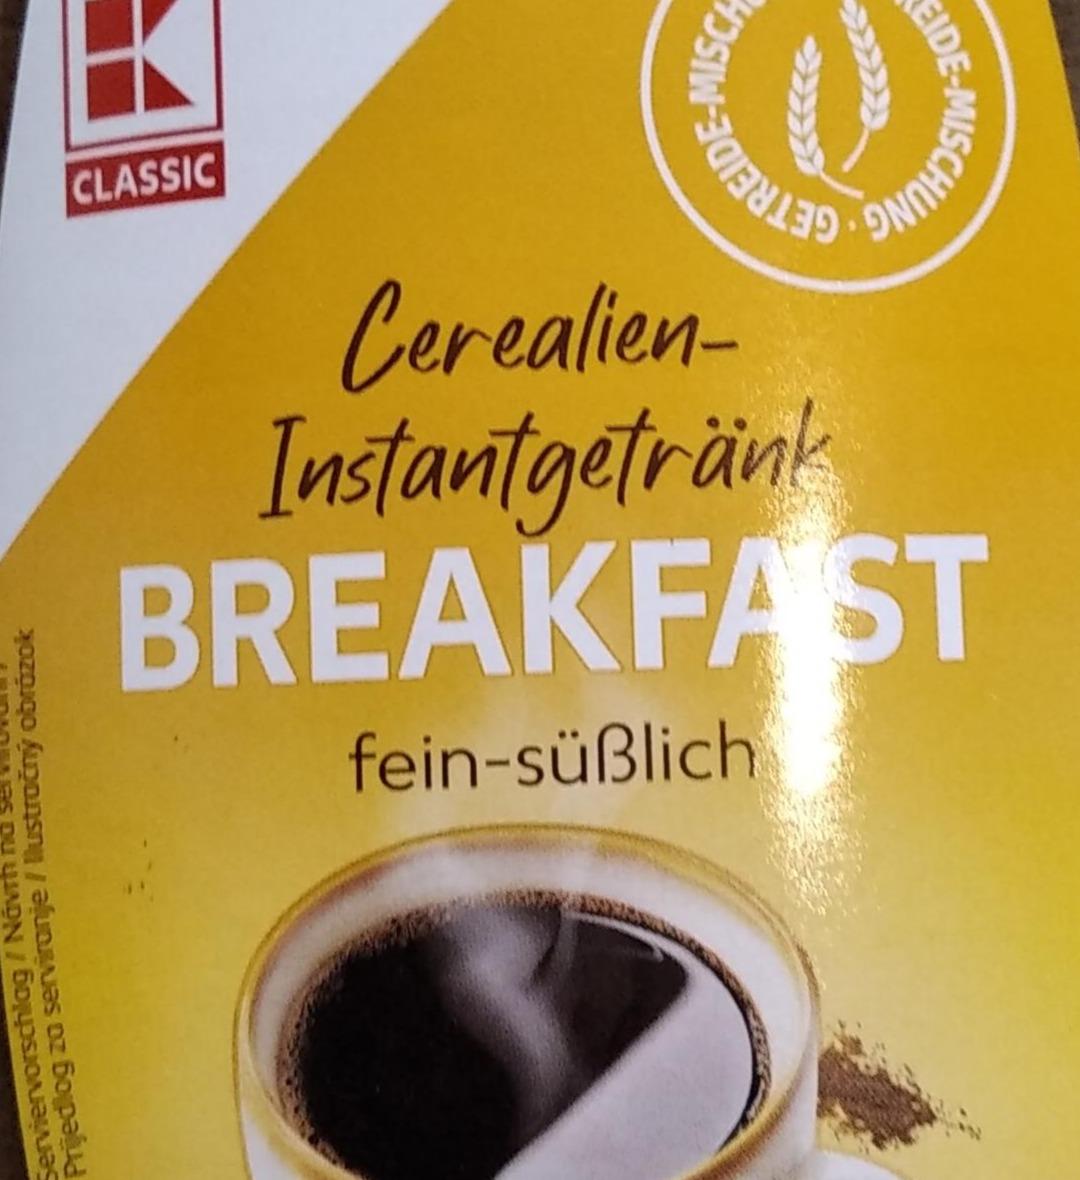 Fotografie - Cerealien instantgetrank breakfast K-Classic